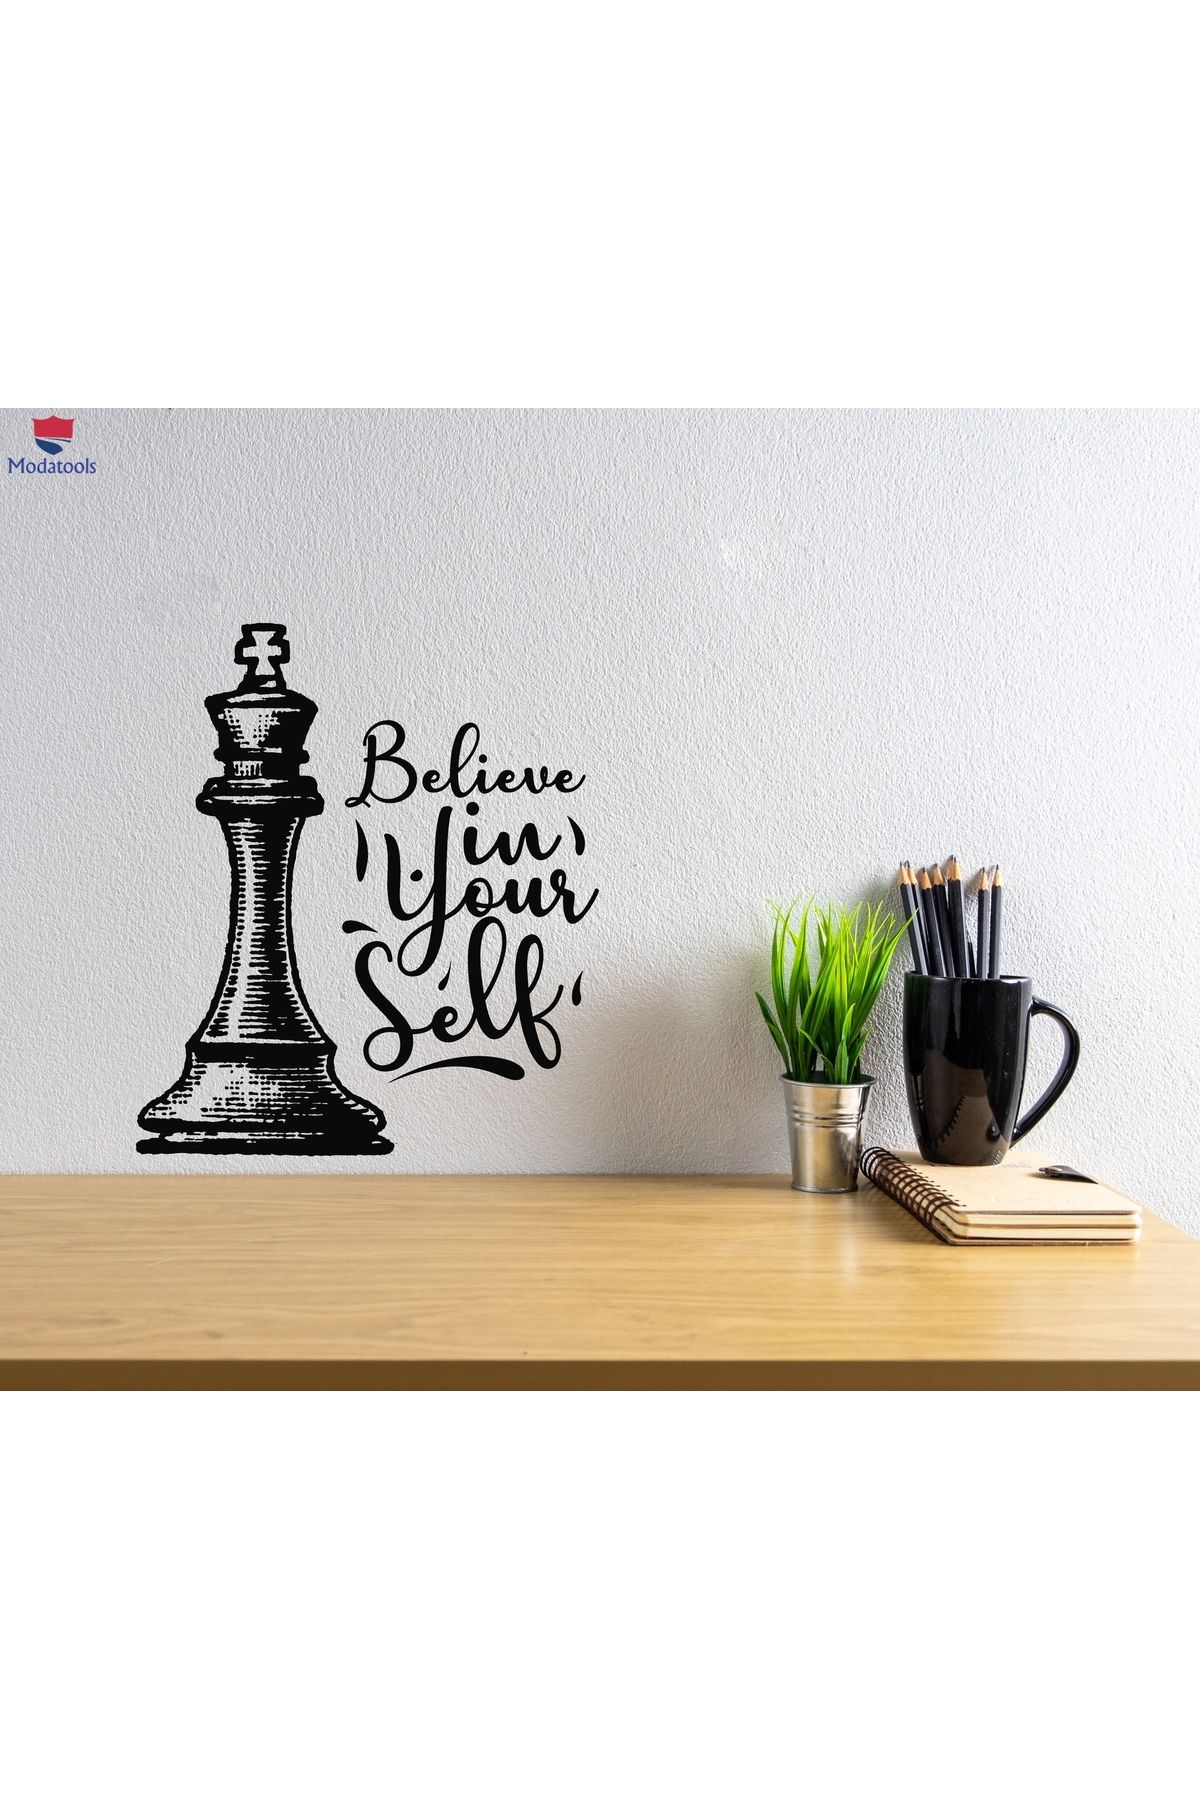 Modatools Oturma Odası, Ofis Dükkan Duvar Sticker Kendinize İnanın Motivasyon Alıntı Satranç Çıkartmaları